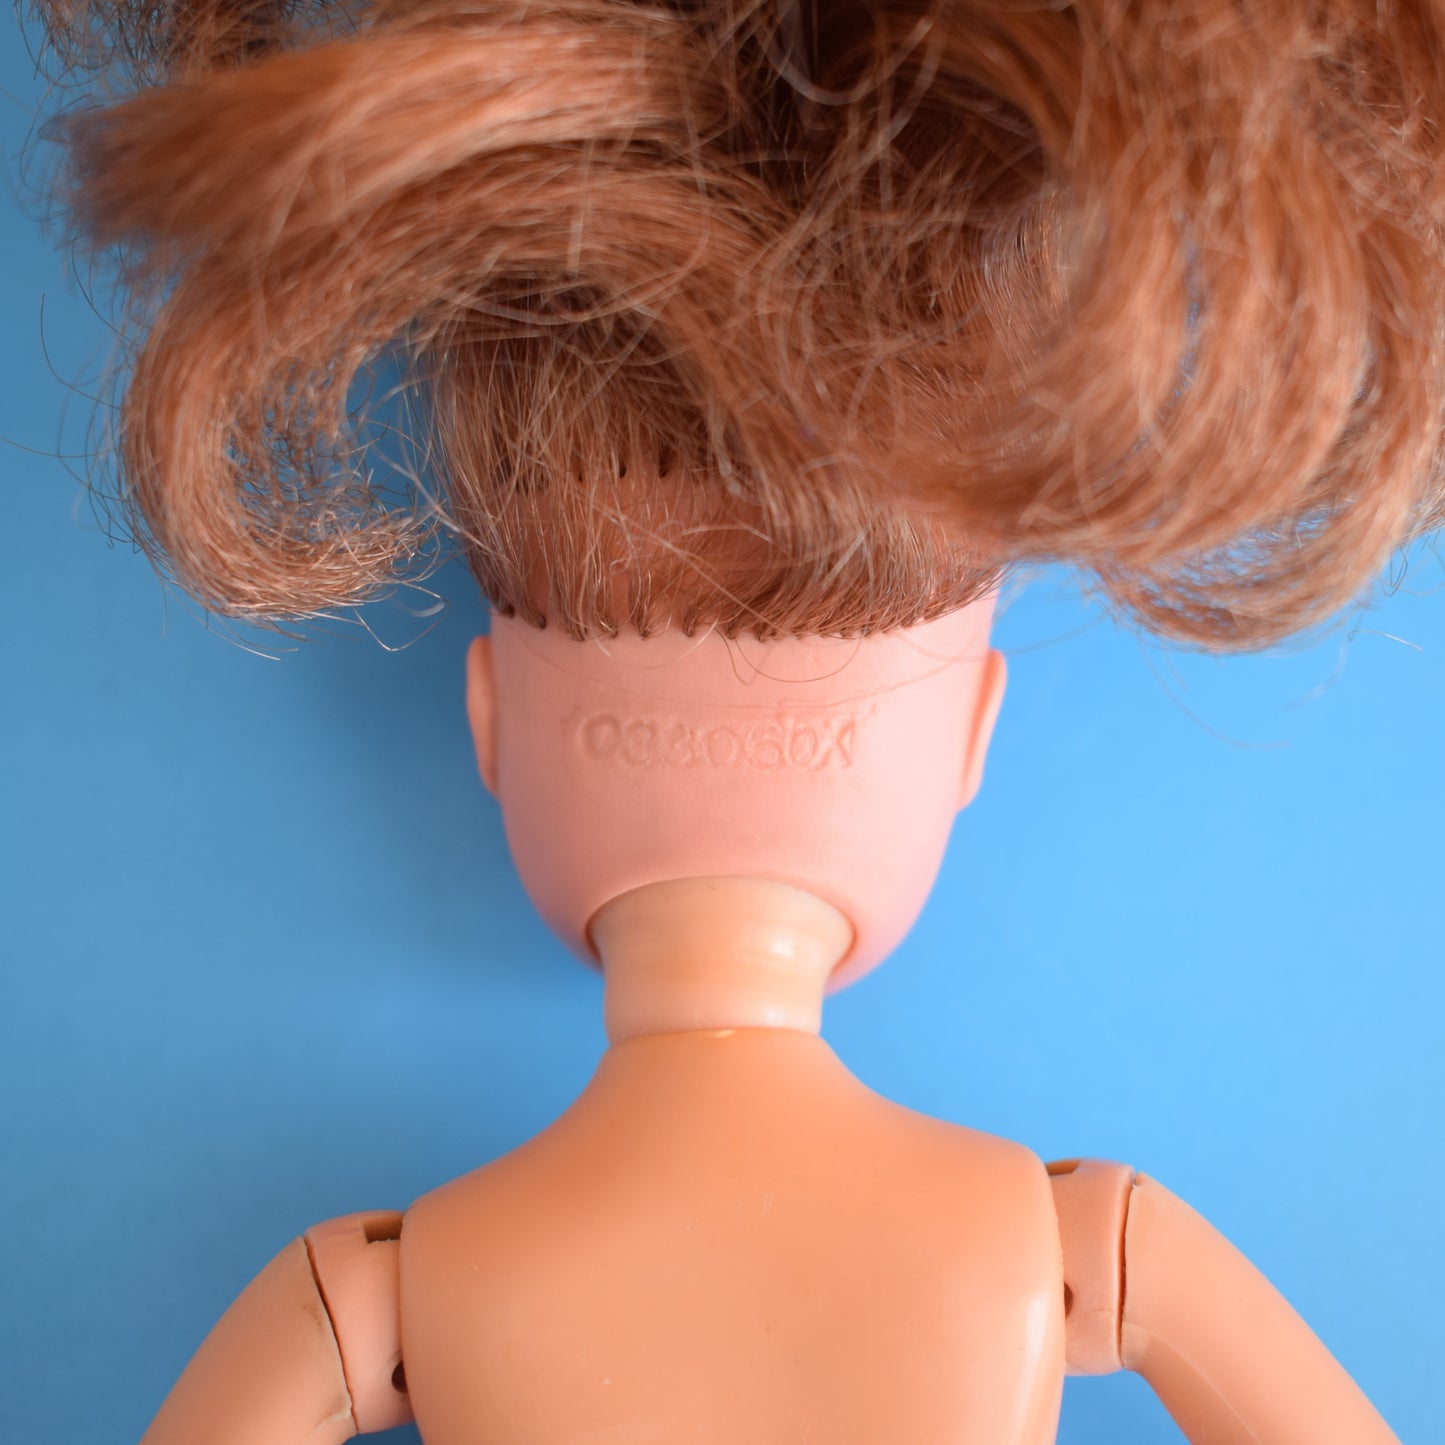 Vintage 1970s Sindy Active Ballerina - Auburn Hair